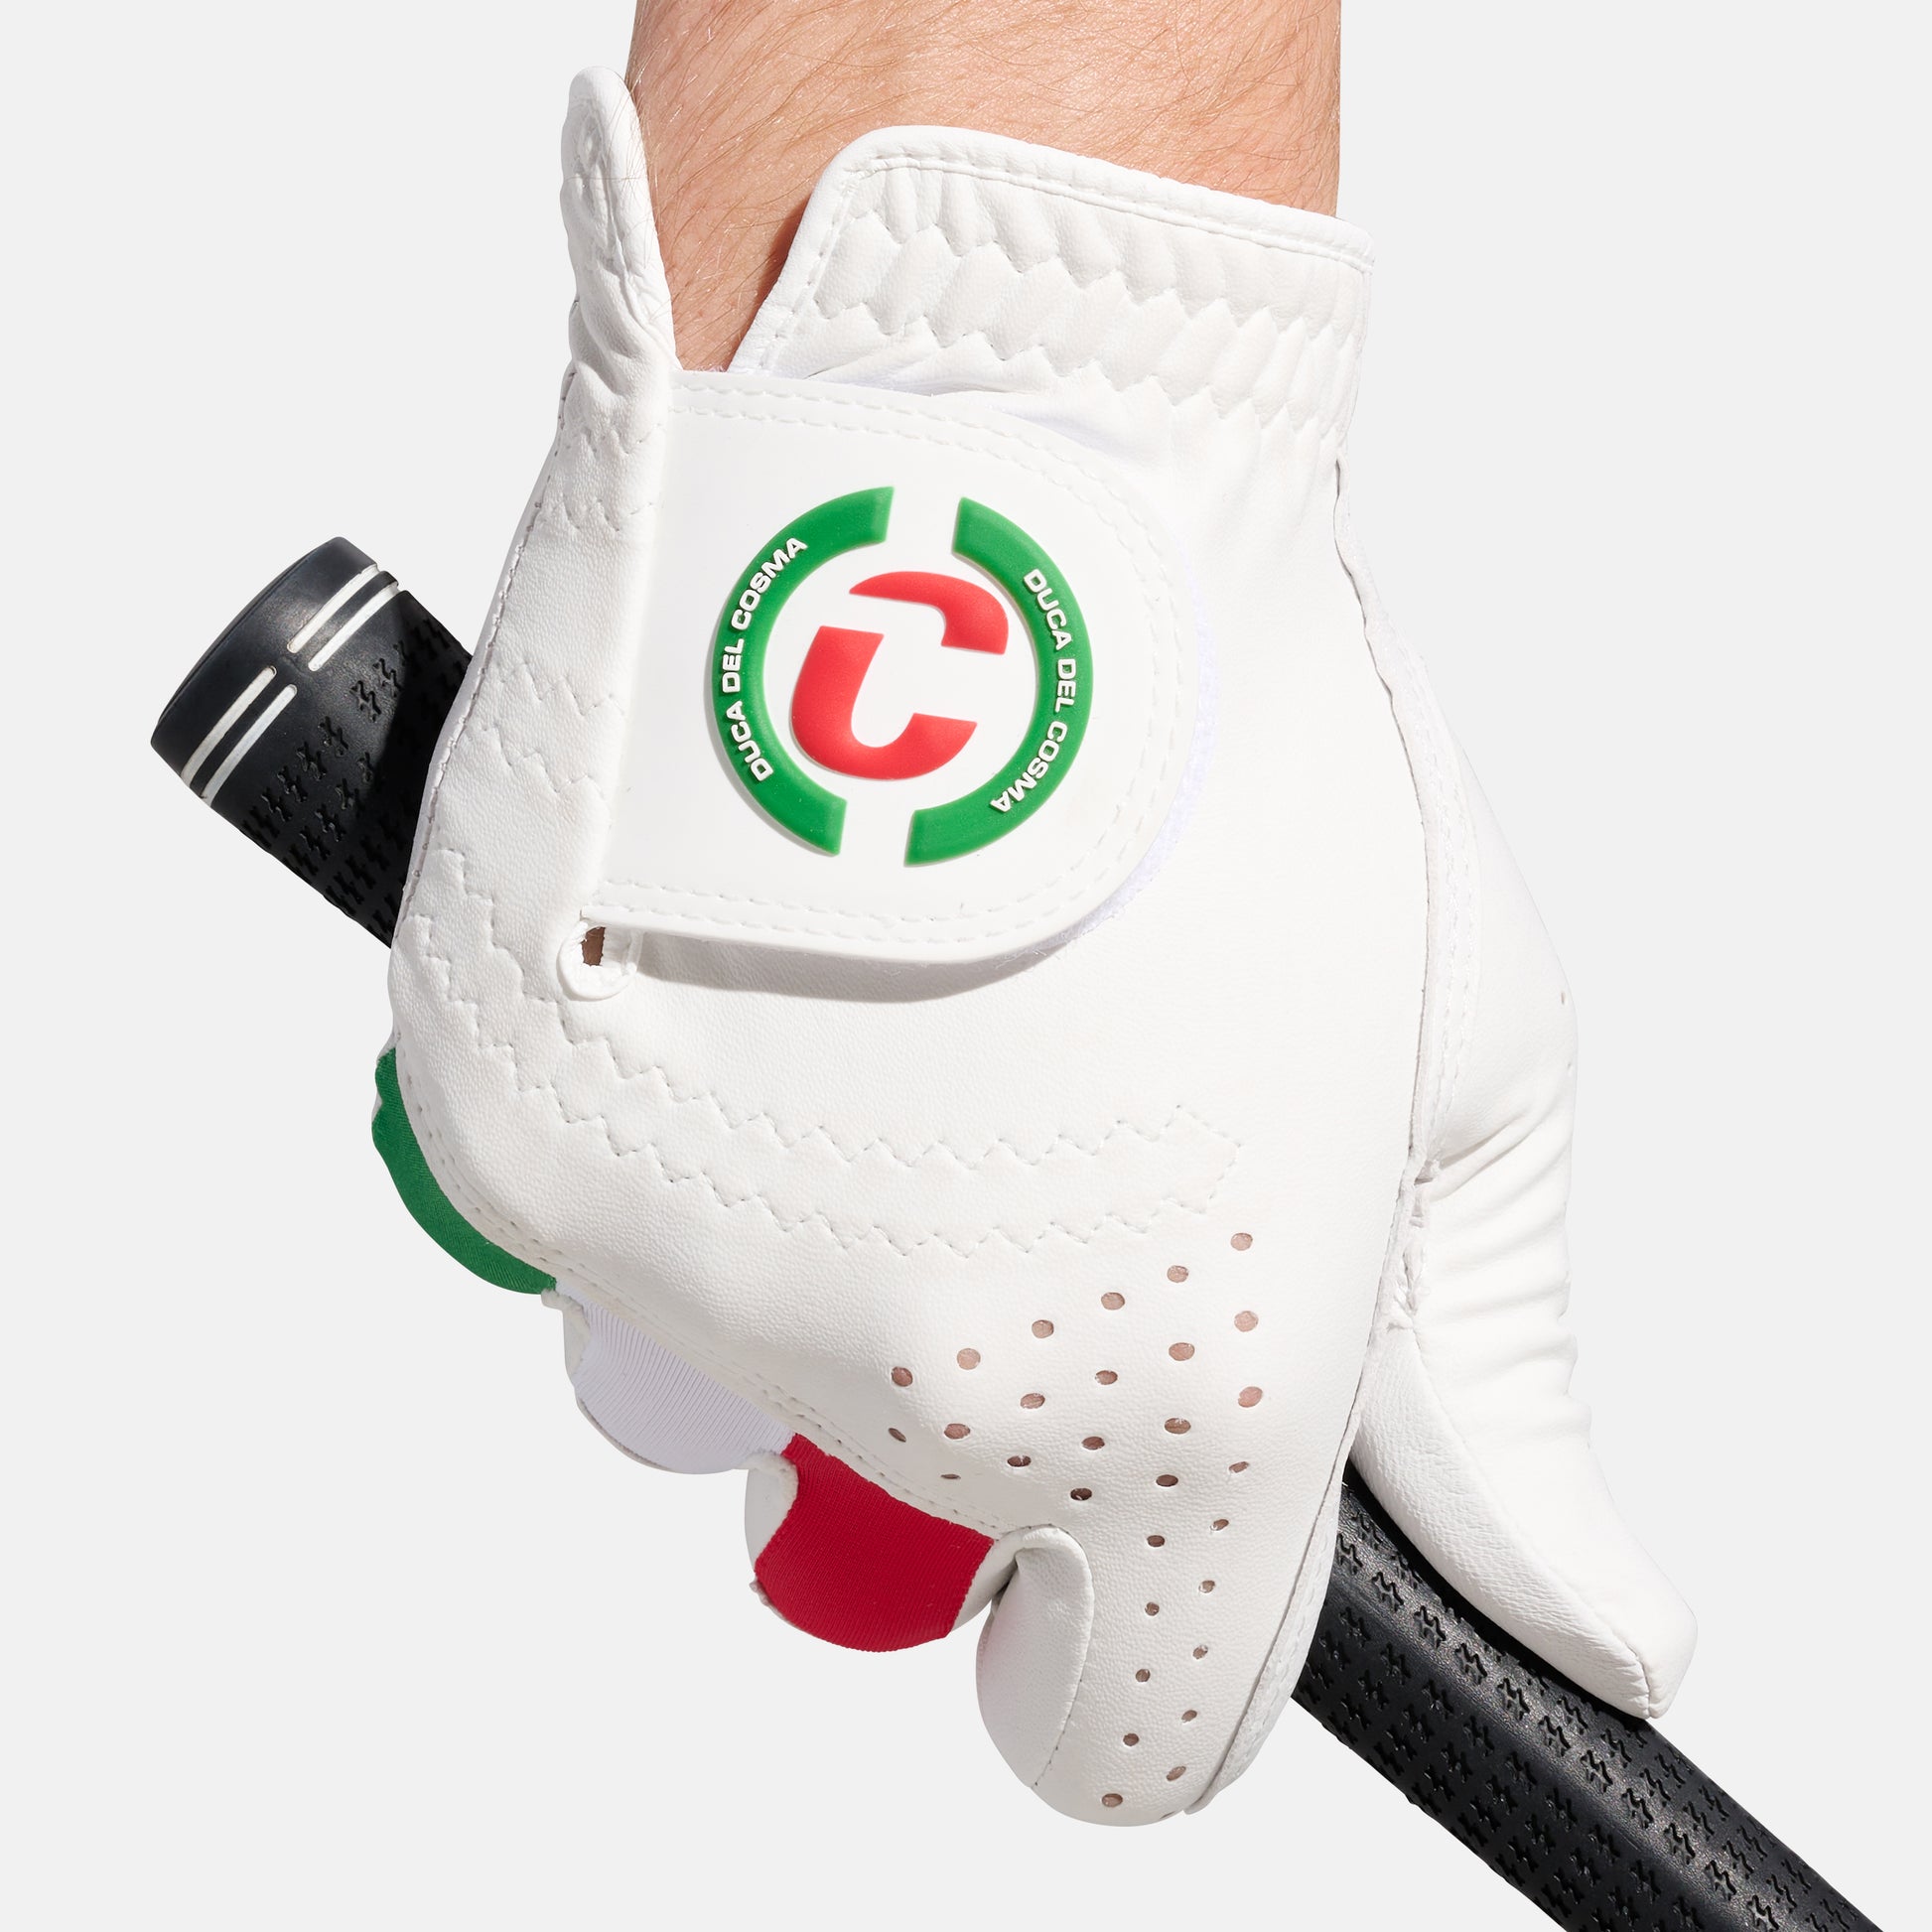 Italian Cabretta Leather Golf Glove